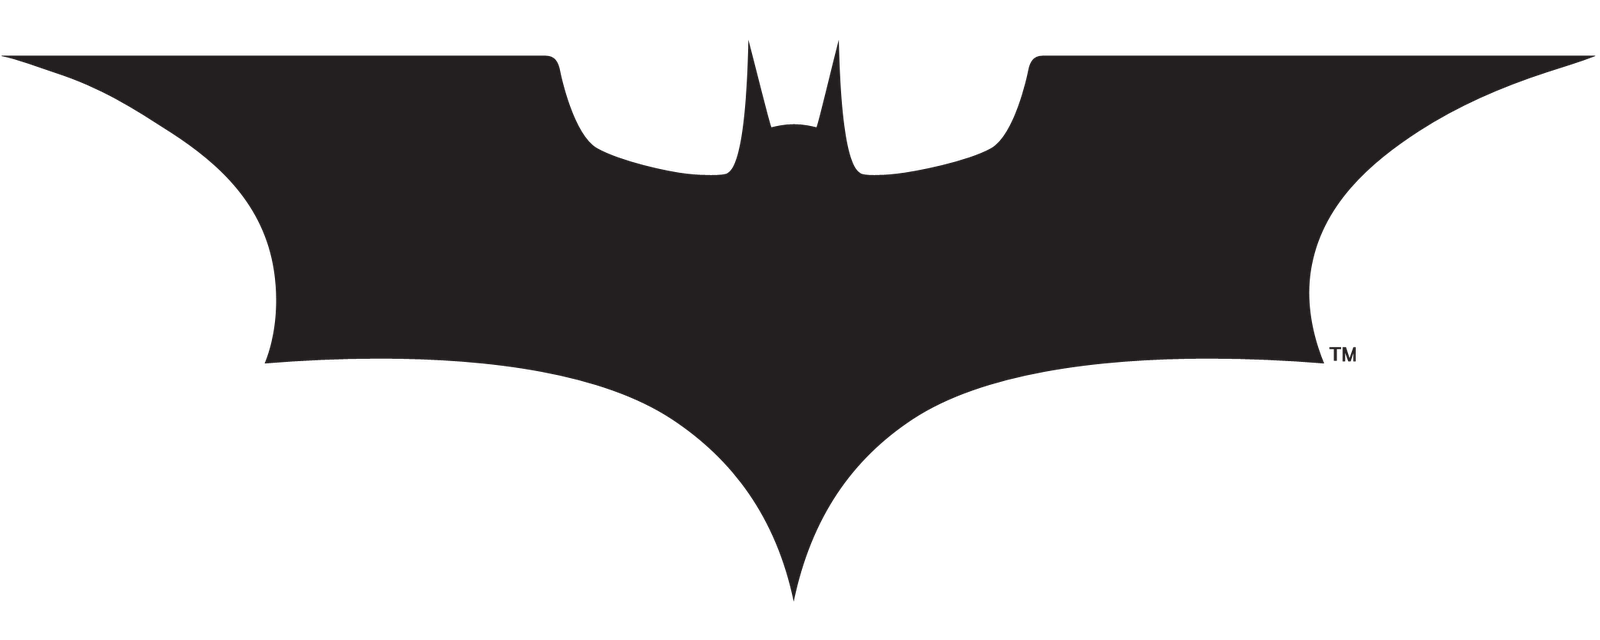 batman beyond logo